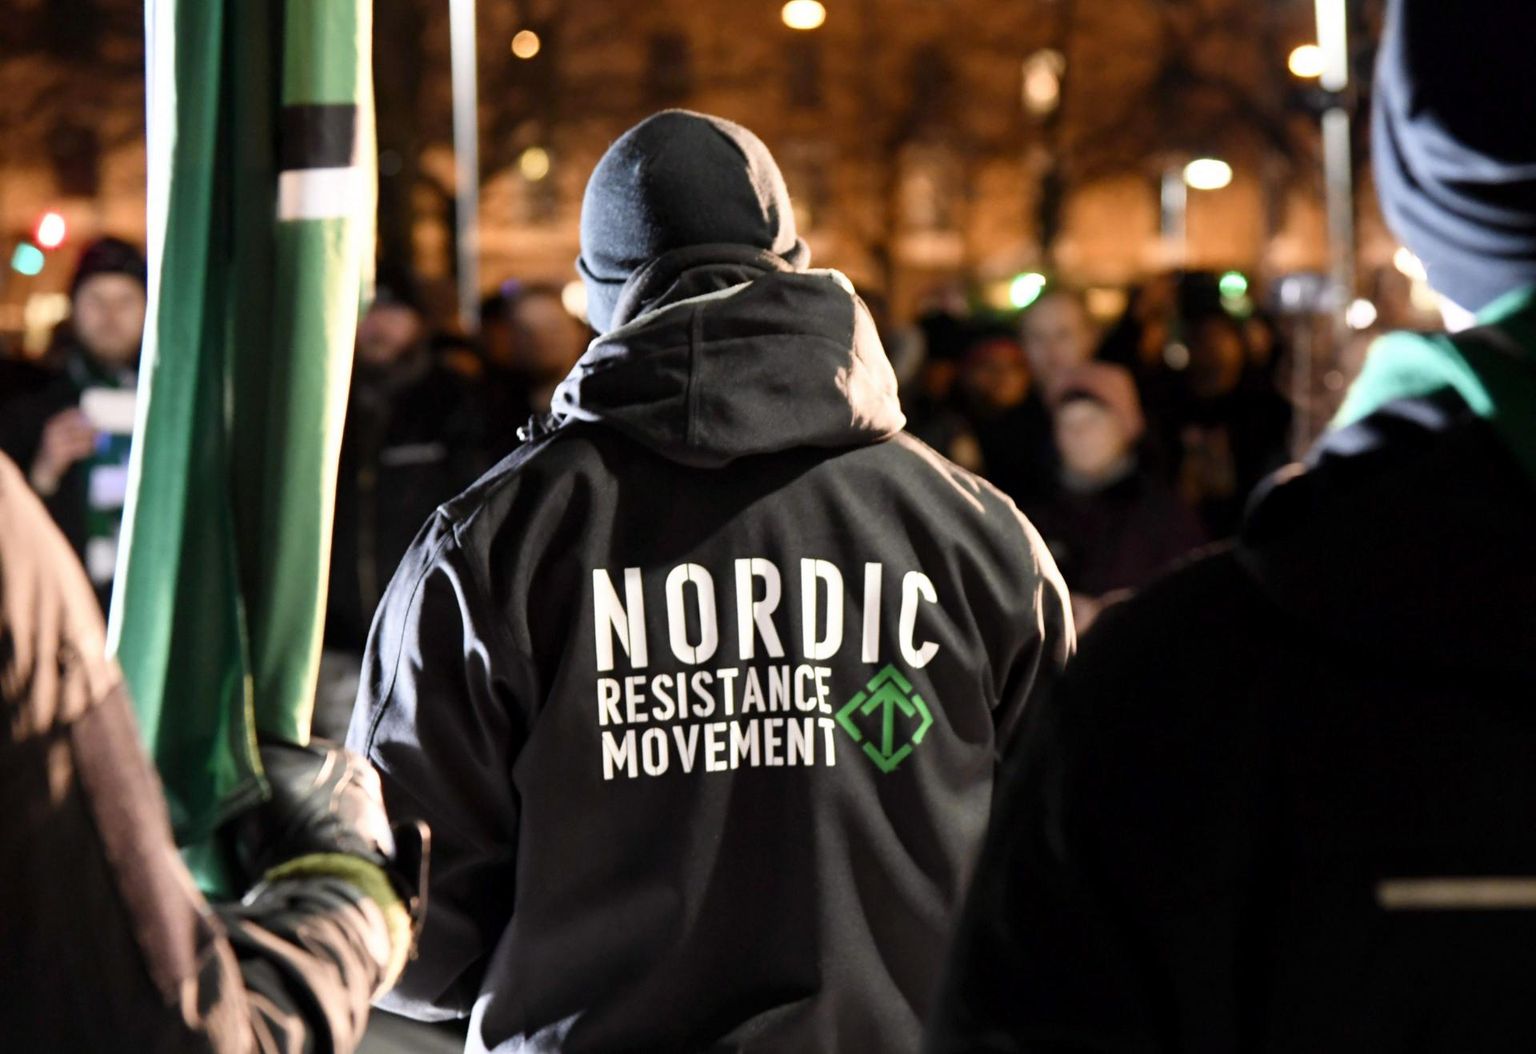 Neonatsliku Põhjamaade Vastupanuliikumise liikmed mullu Soome iseisvuspäeval toimunud marsil Helsingis. FOTO: Vesa Moilanen/Ap/Scanpix